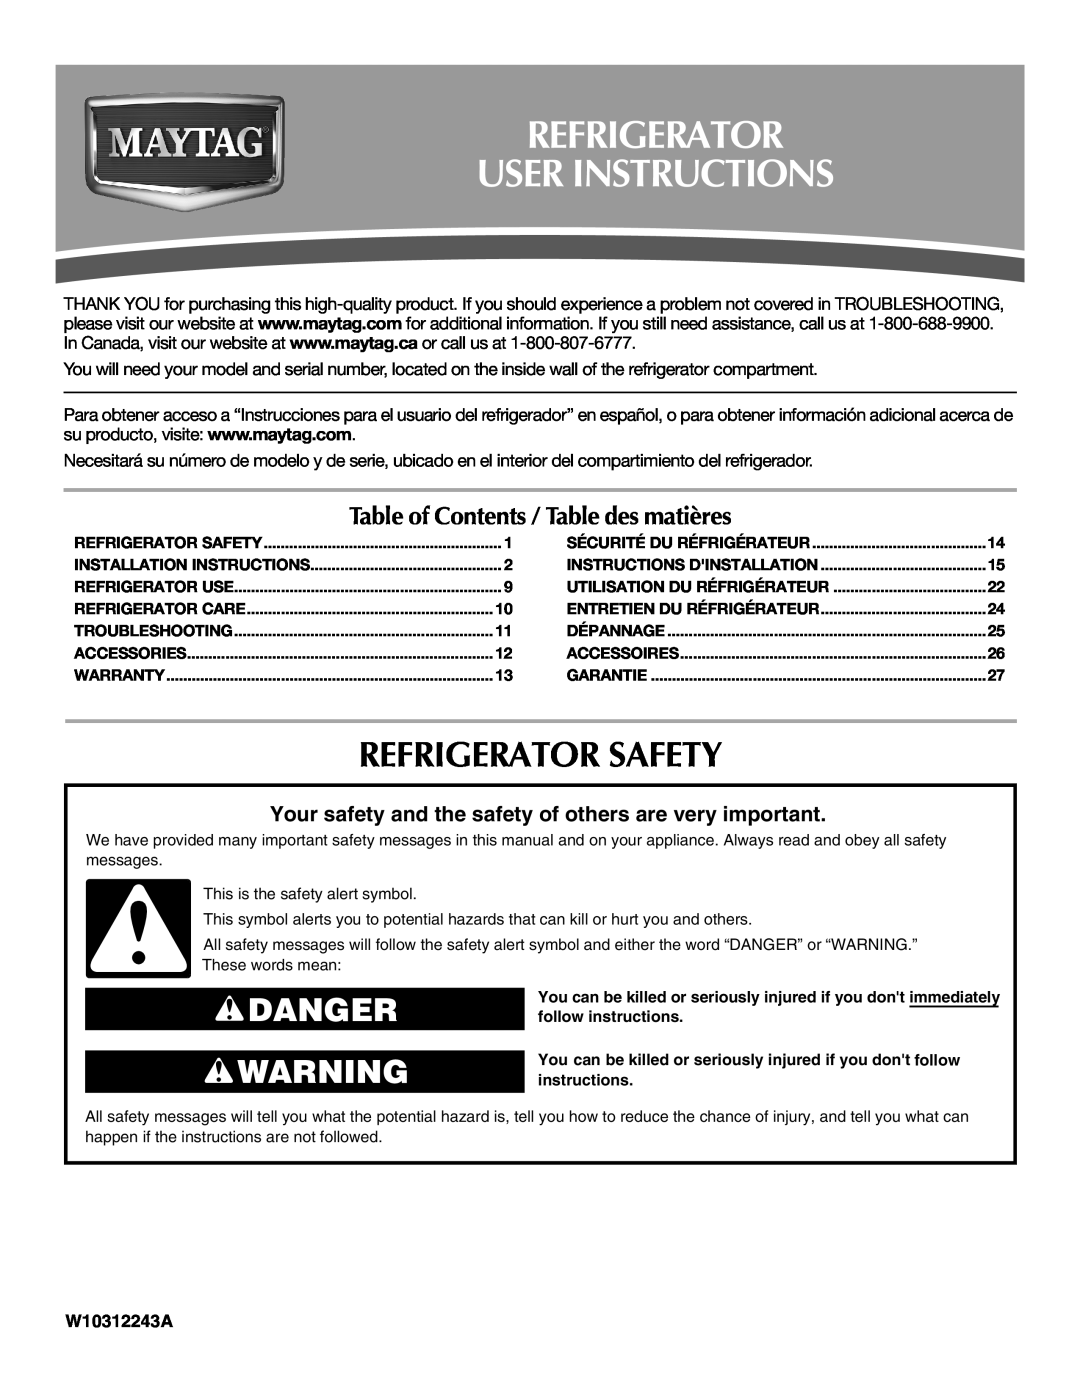 Maytag W10312244A installation instructions Refrigerator User Instructions, Refrigerator Safety, Danger, W10312243A 